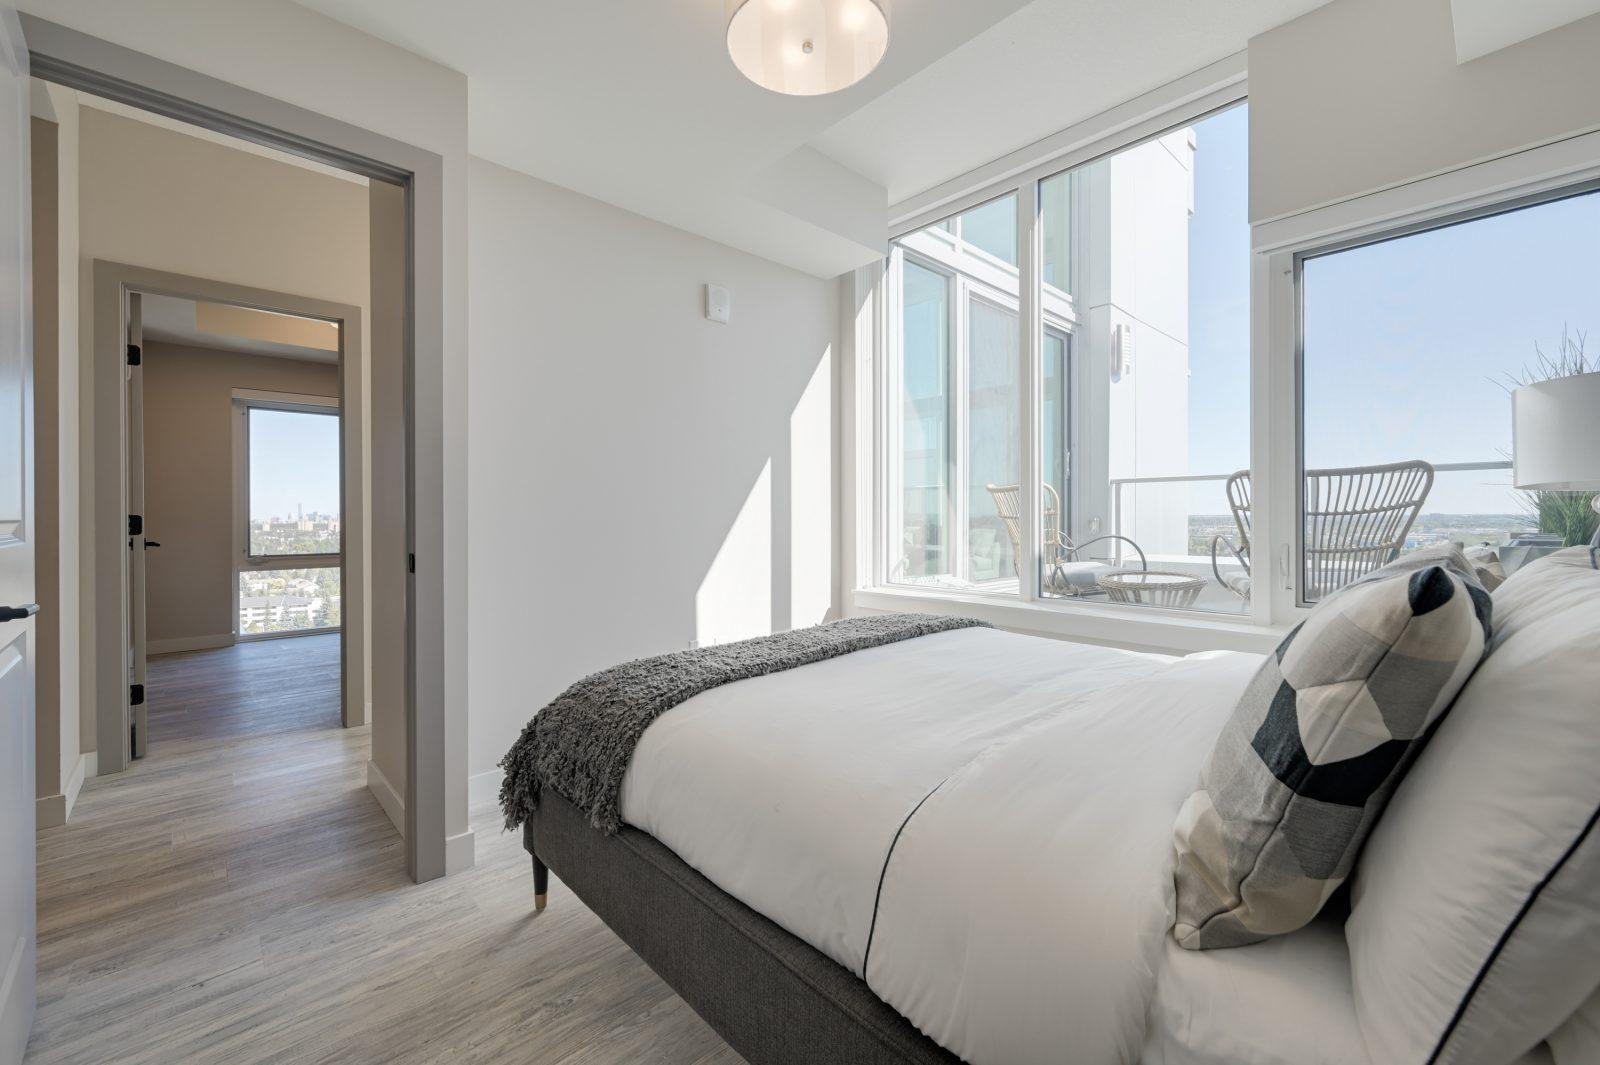 Luxury bedroom suites 